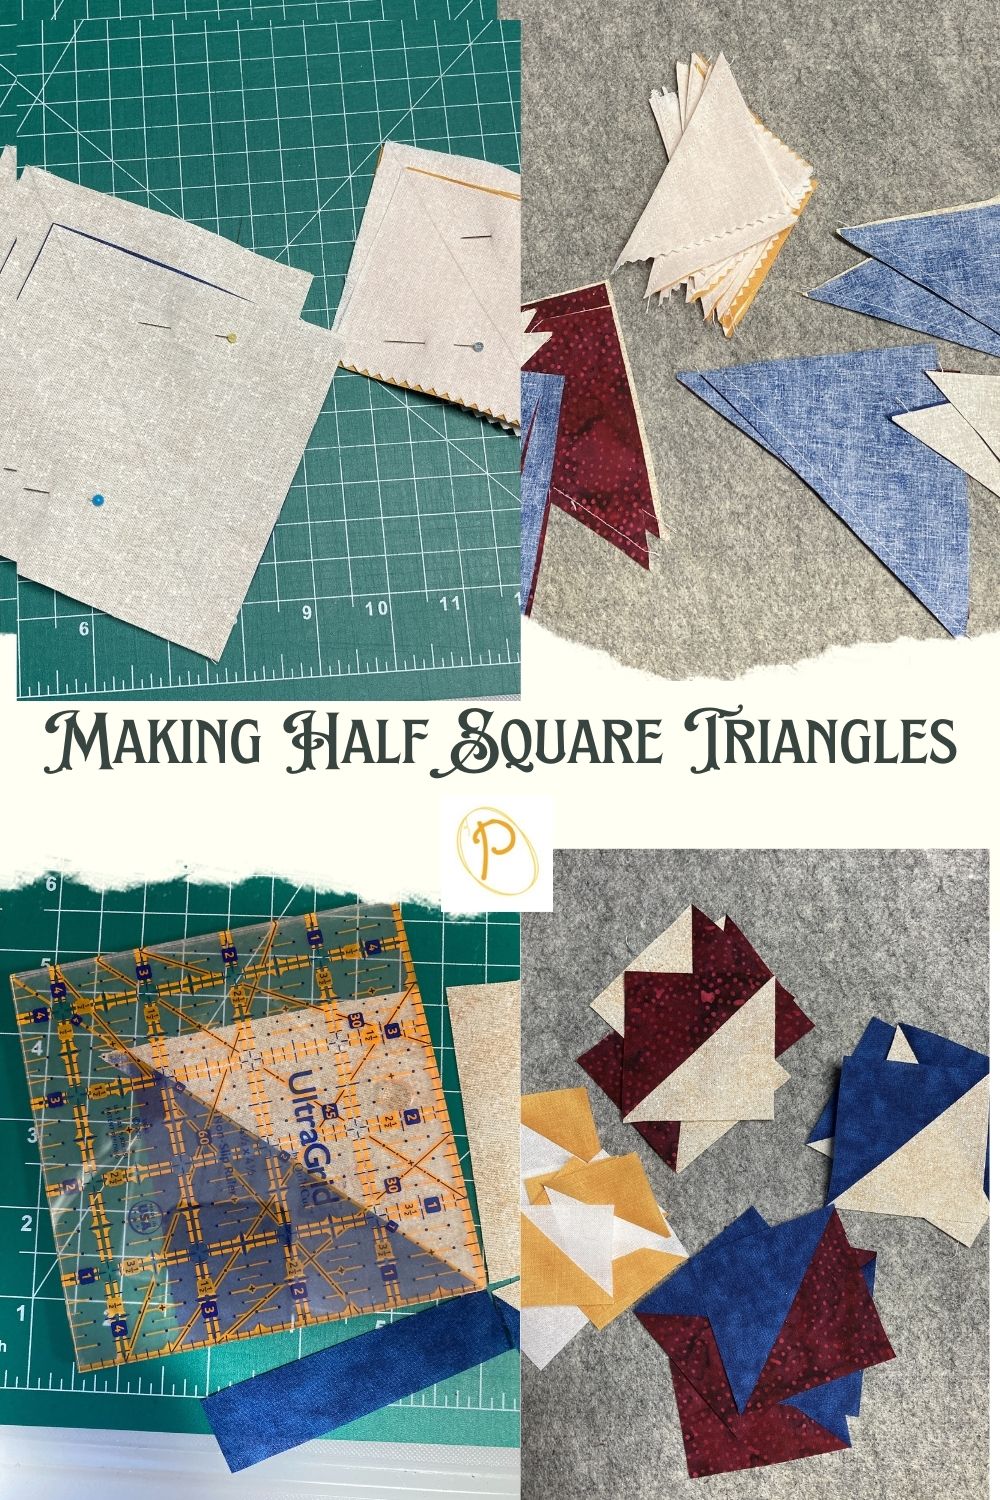 Making Half Square Triangles